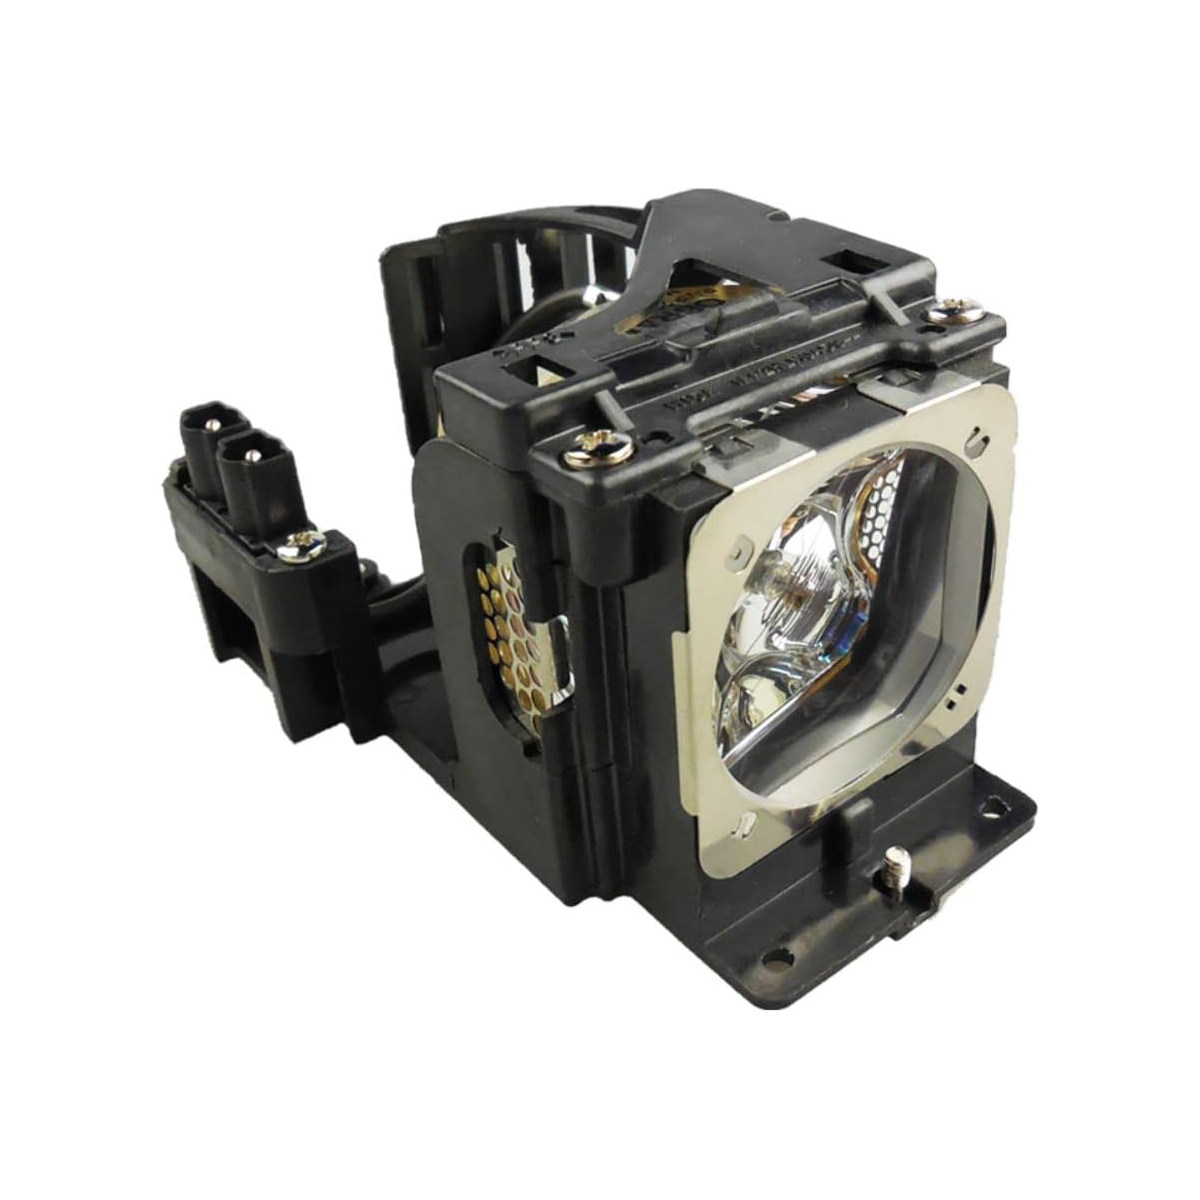 Replacement Projector lamp POA-LMP90 For Sanyo PLC-WXE45 PLC-WXE46 PLC-WXL46